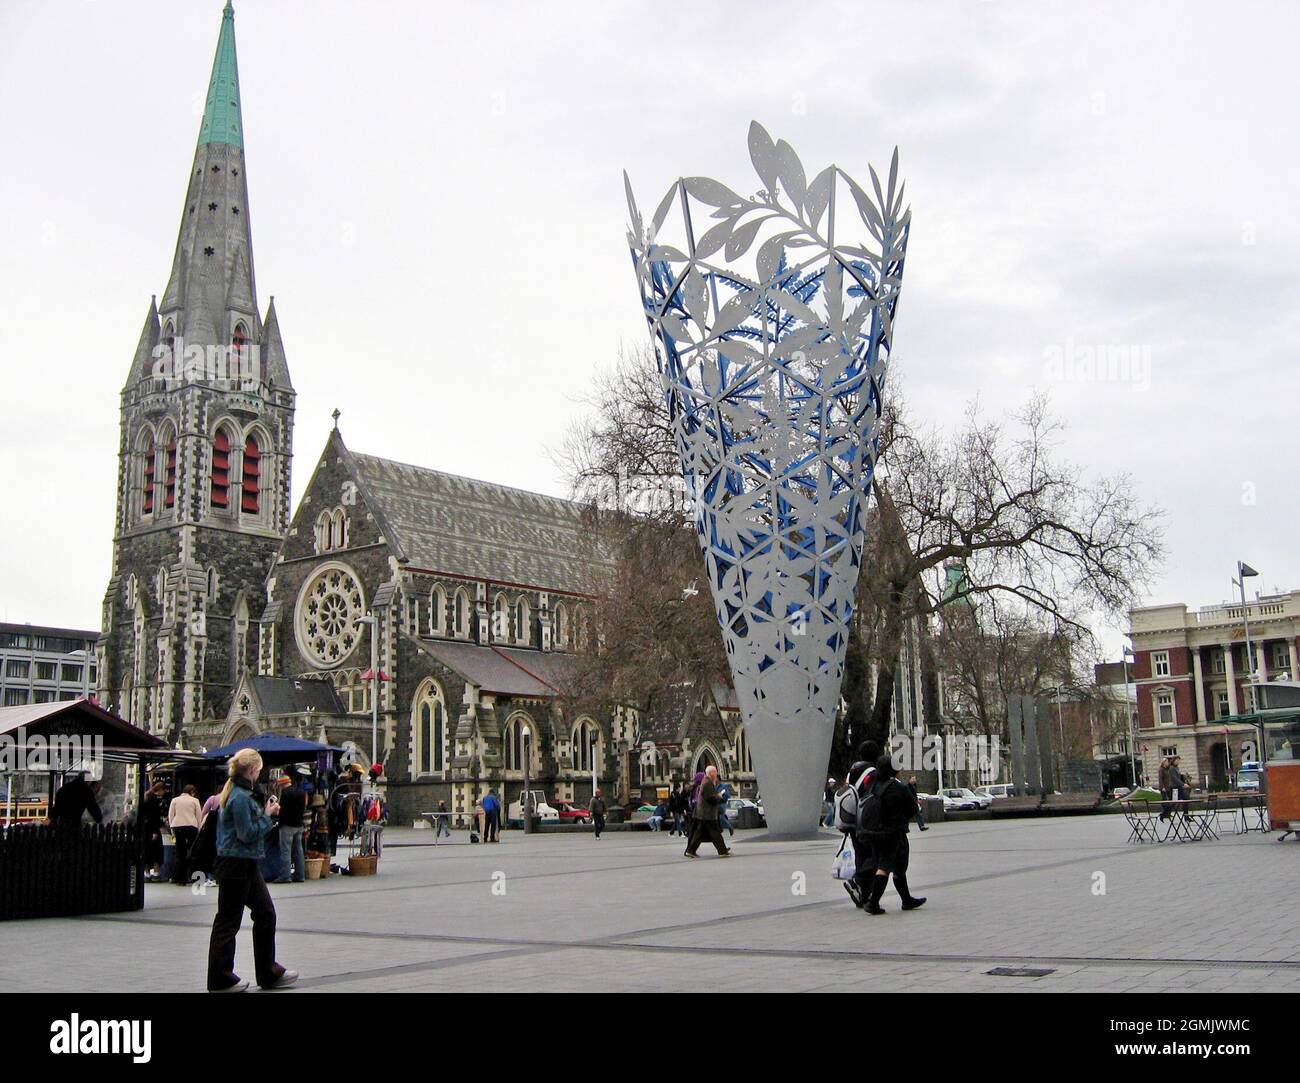 Cathedral Square, das als Zentrum von Christchurch gilt, Neuseeland beherbergt zahlreiche Sehenswürdigkeiten, darunter die historische anglikanische ChristChruch-Kirche und die moderne öffentliche Kunst in der Nähe, die Chalice. Am 22. Februar 2011 verursachte ein Erdbeben der Größenordnung von 6,3 katastrophale Schäden an der Kathedrale, der Stadt und der Region Canterbury insgesamt. Es gab zahlreiche Nachbeben, einschließlich des Nachbefalls der Größe 6,0 am 13. Juni 2011. Laut Schätzungen der Opfer war dies sogar die fünfttödlichste in der Geschichte Neuseelands. Das Foto vom Cathedral Square wurde am 14. September 2004 gemacht. Stockfoto